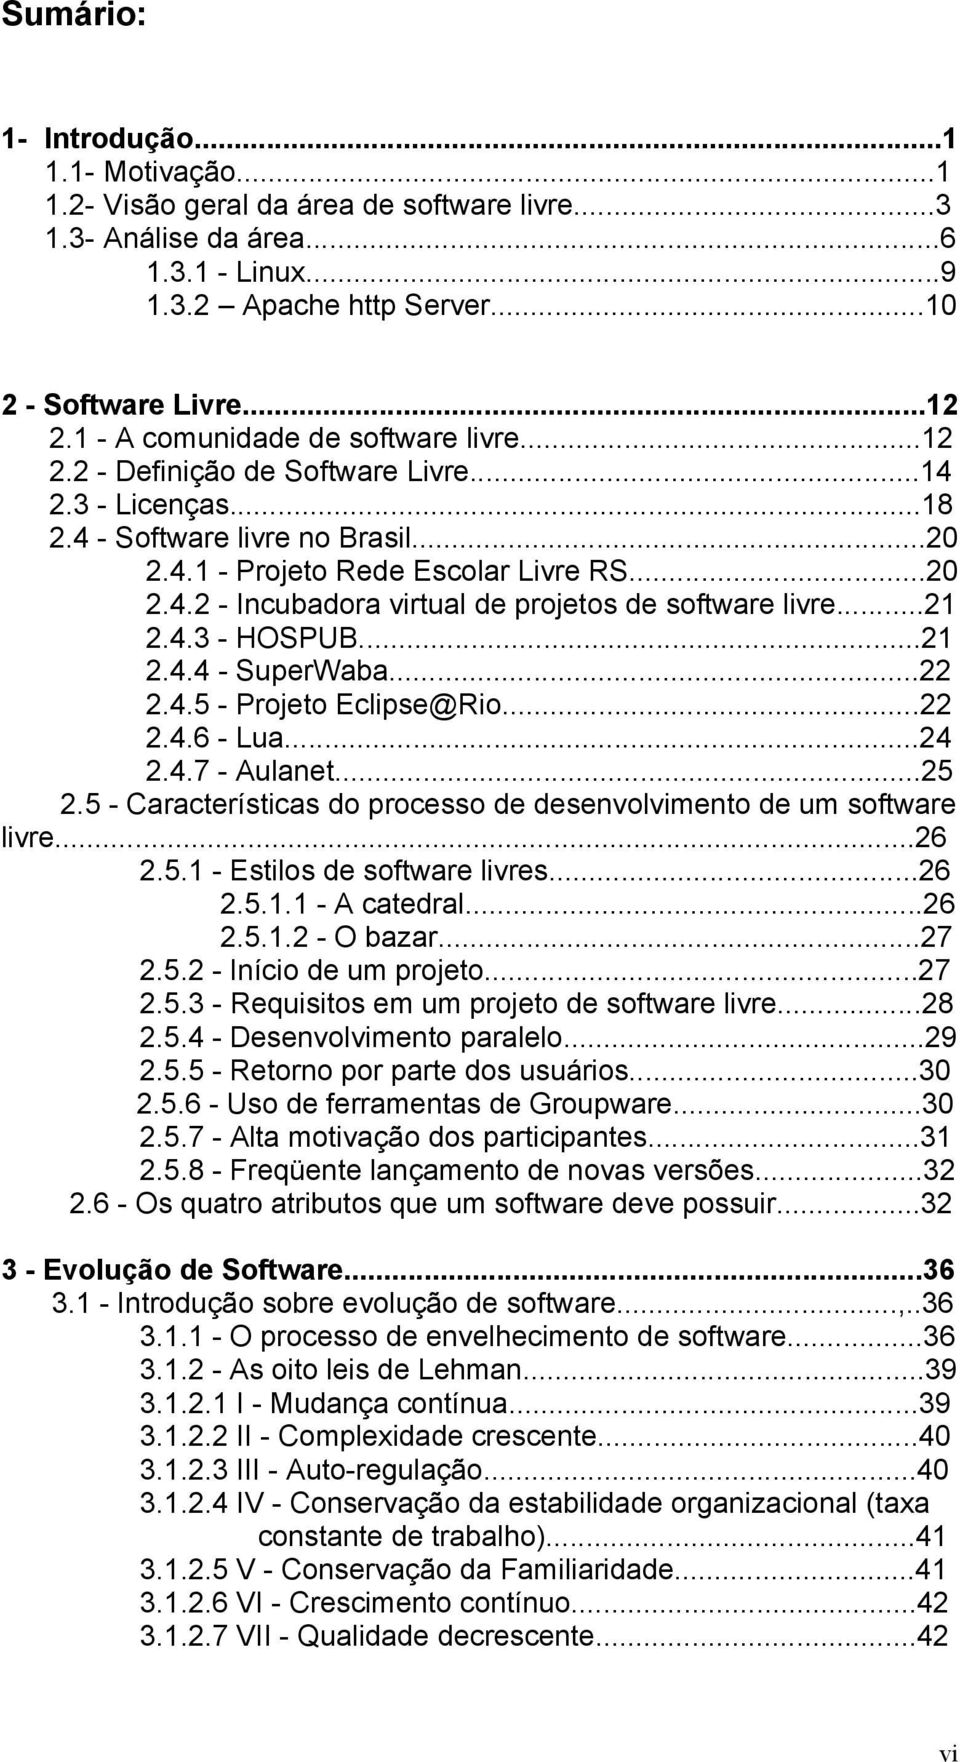 ..21 2.4.3 - HOSPUB...21 2.4.4 - SuperWaba...22 2.4.5 - Projeto Eclipse@Rio...22 2.4.6 - Lua...24 2.4.7 - Aulanet...25 2.5 - Características do processo de desenvolvimento de um software livre...26 2.